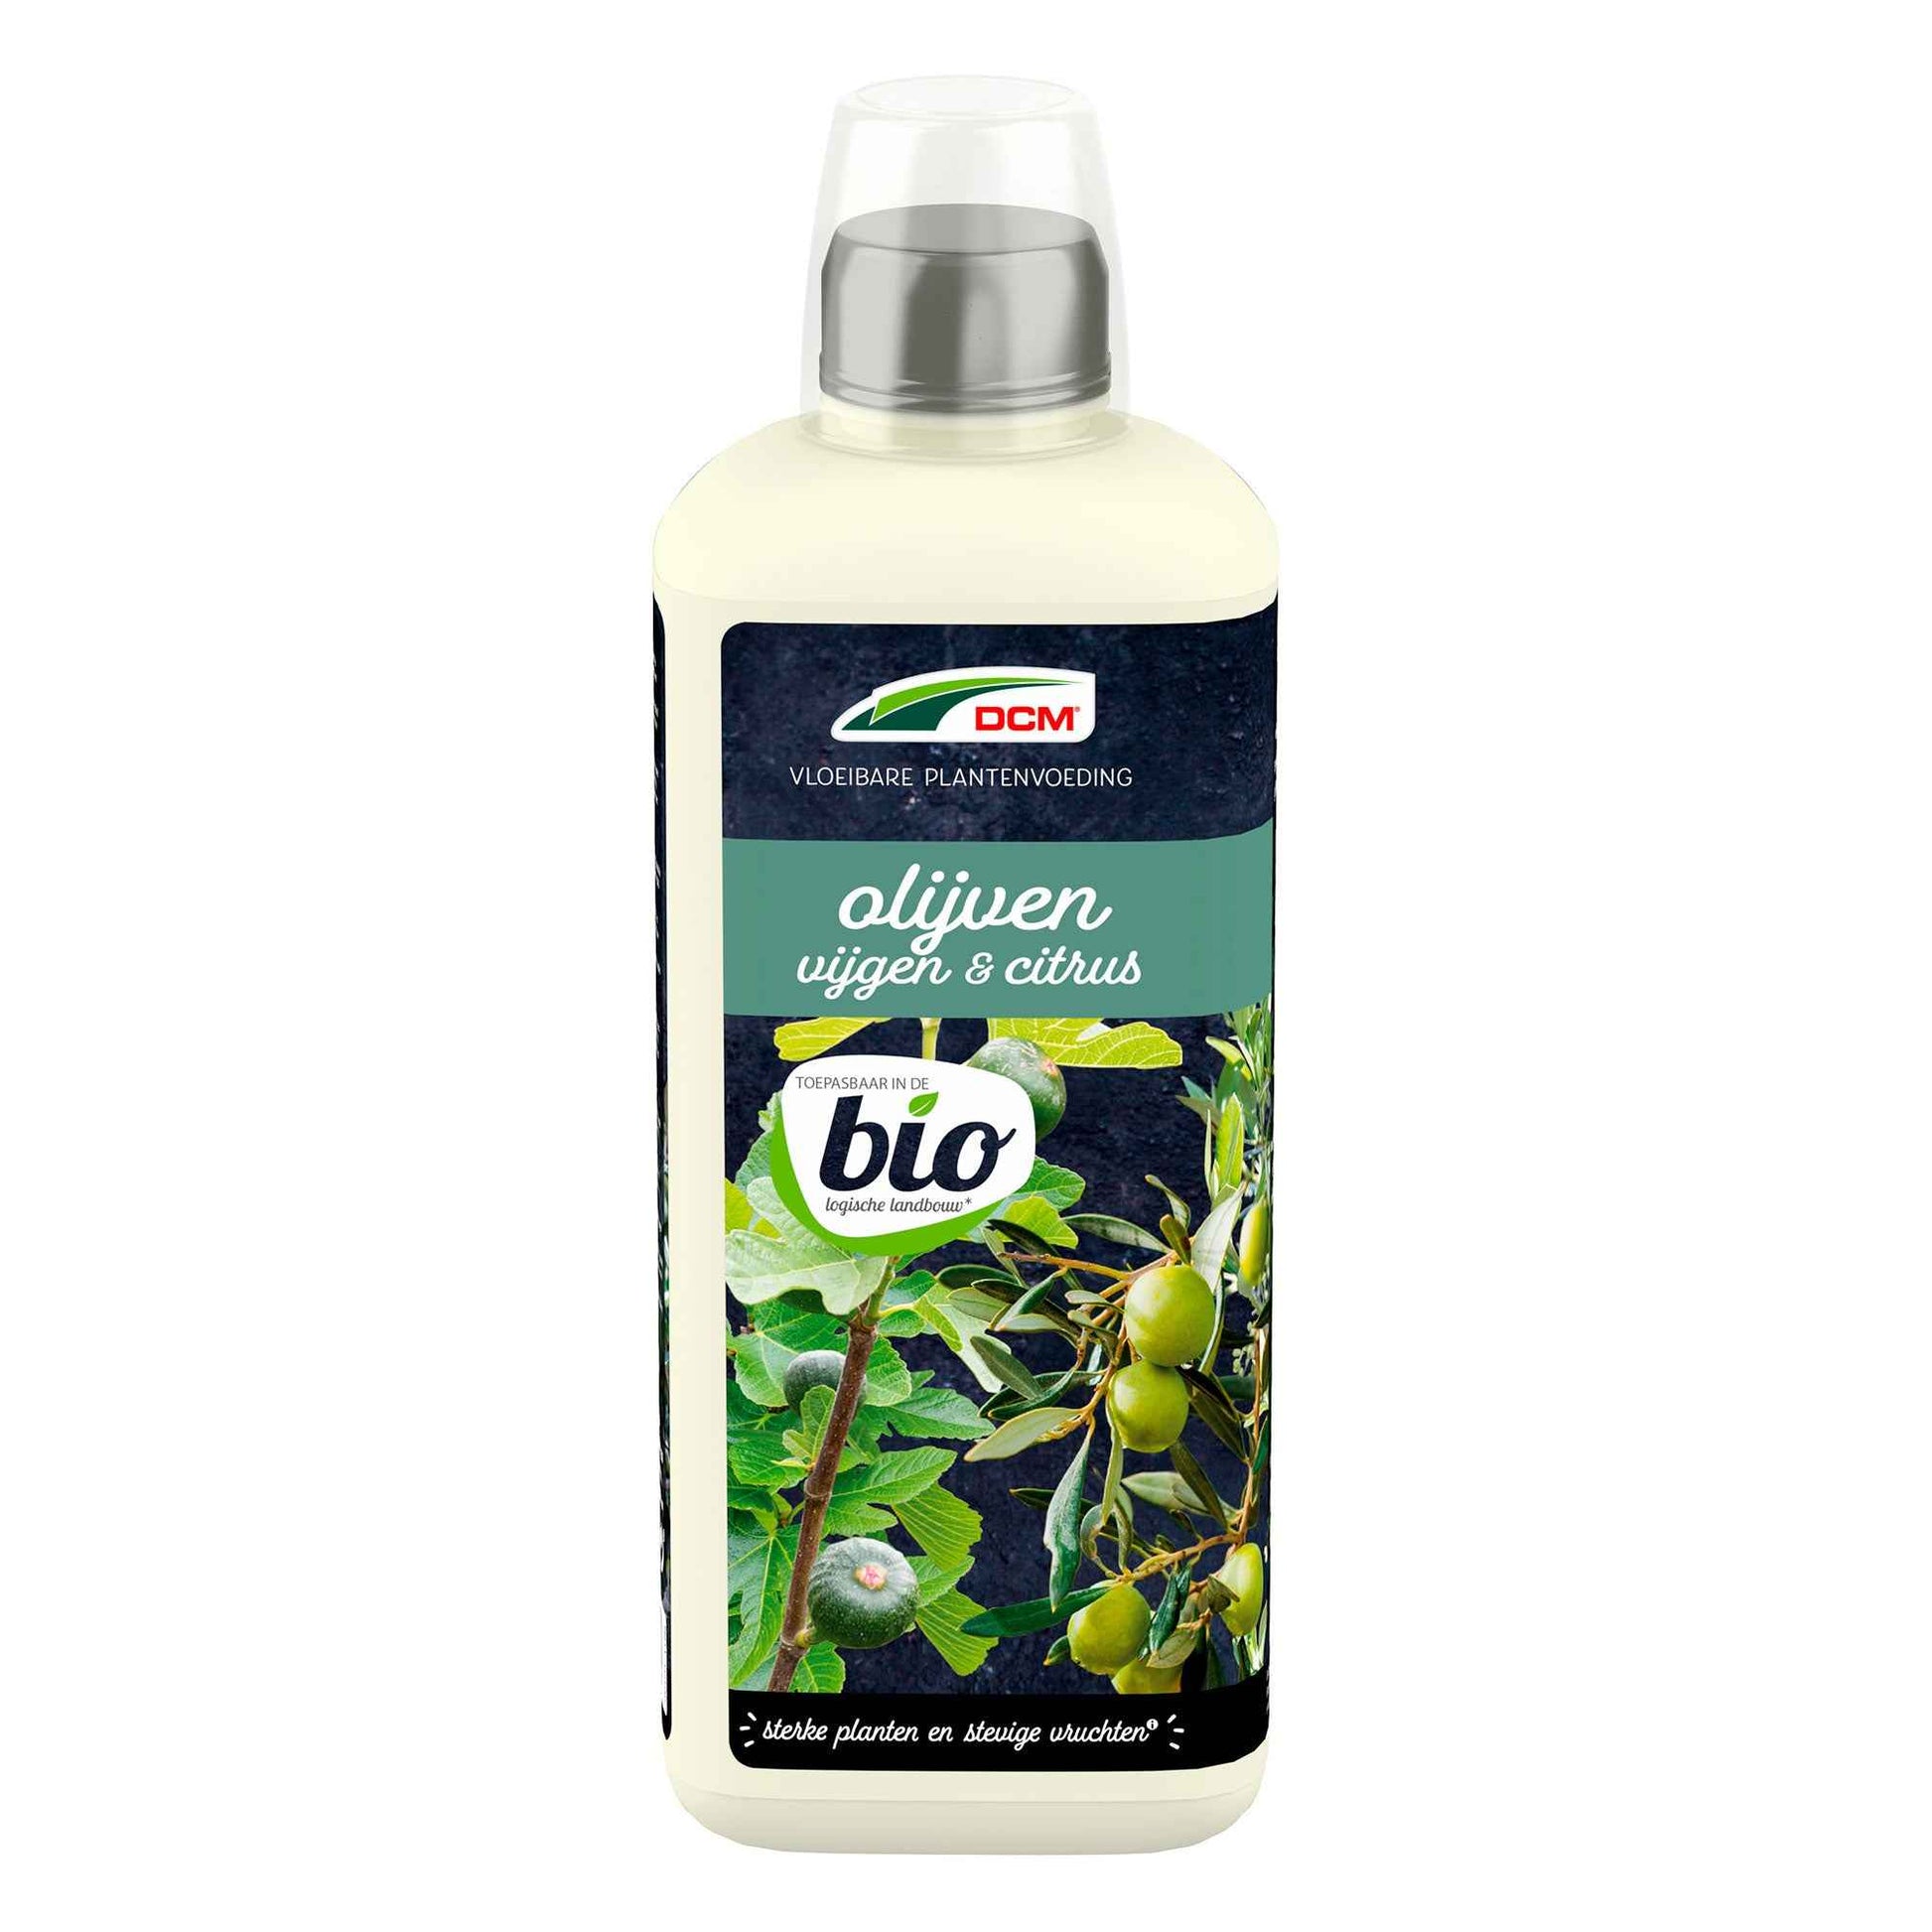 Vloeibare Plantenvoeding voor olijven, vijgen & citrus - Biologisch 0,8 liter - DCM - Meststoffen